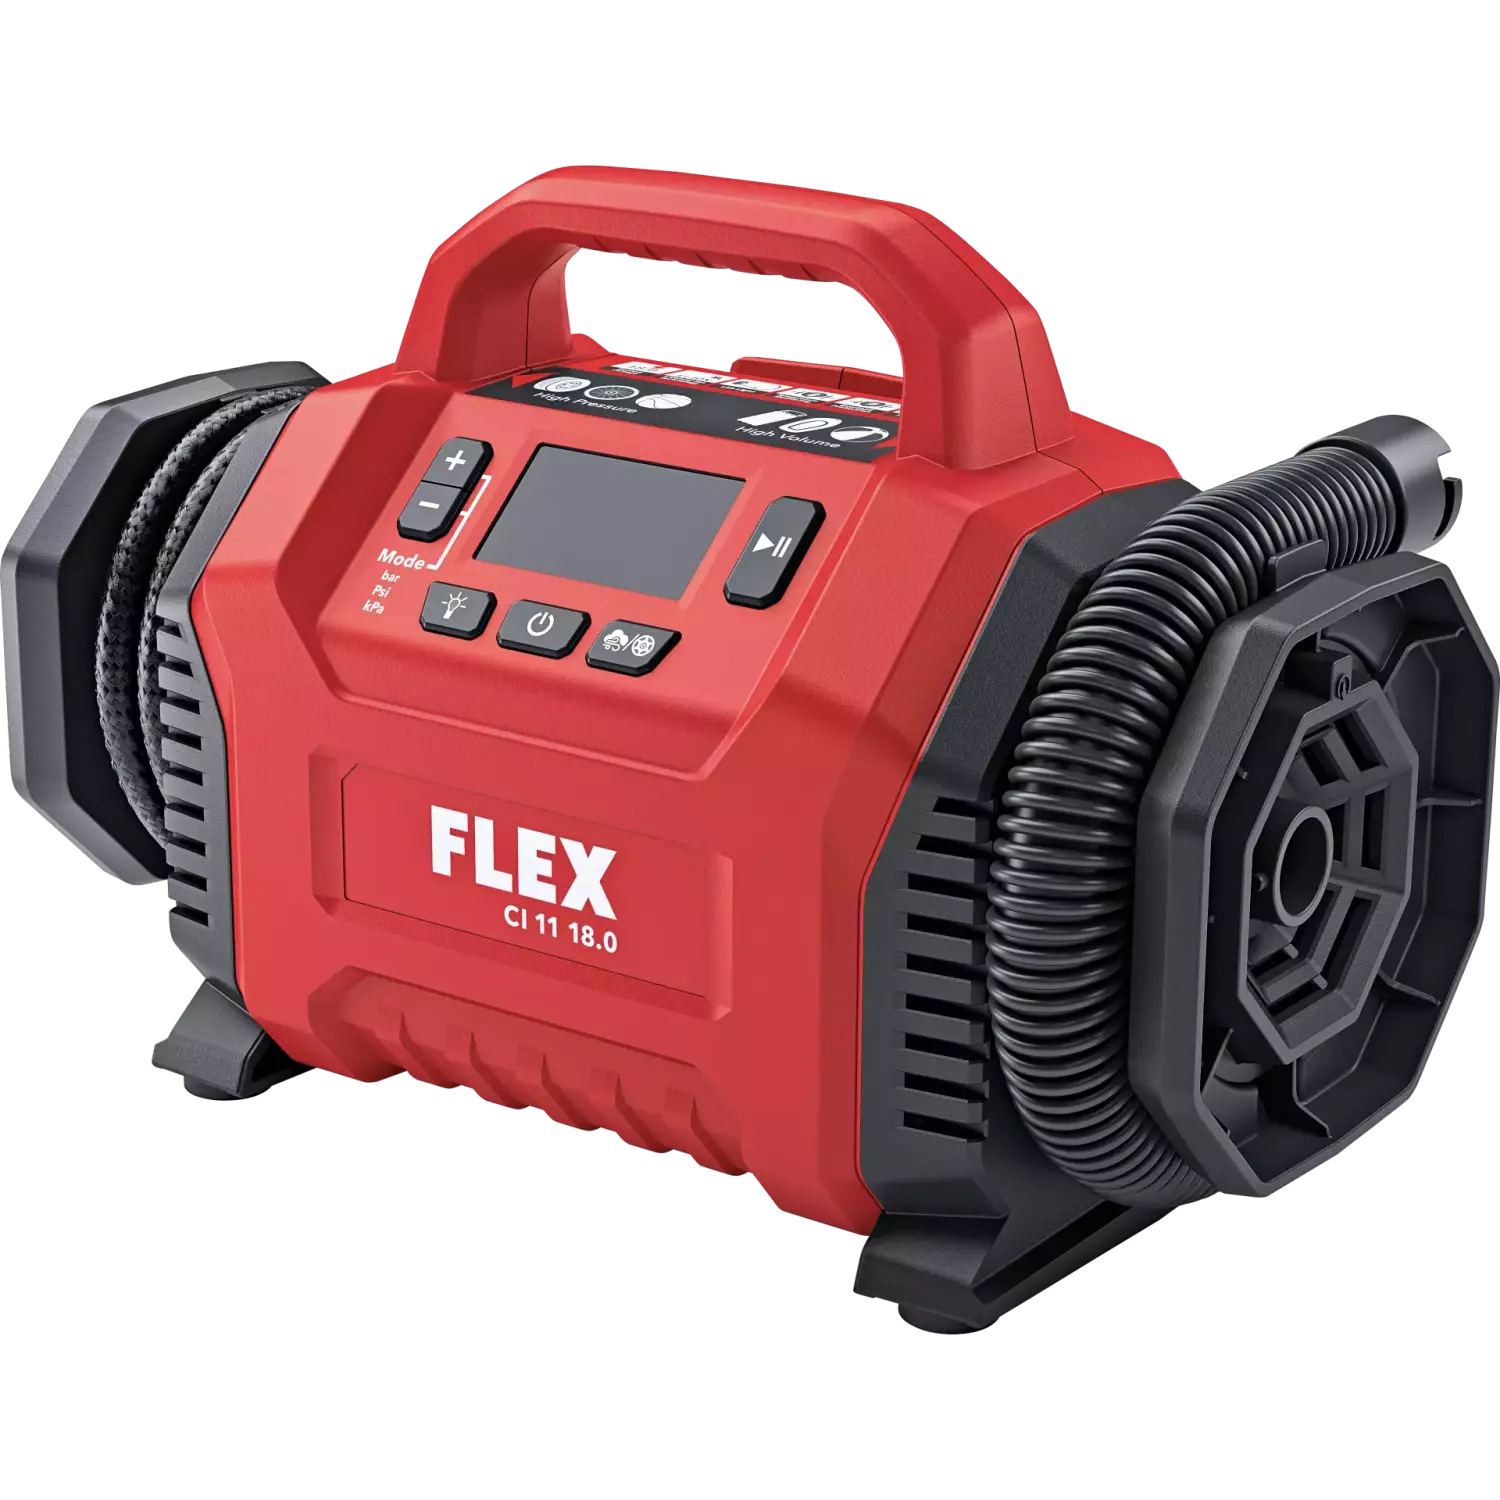 Flex CI 11 18.0 Li-ion Accu compressor body - 12V / 18V-image